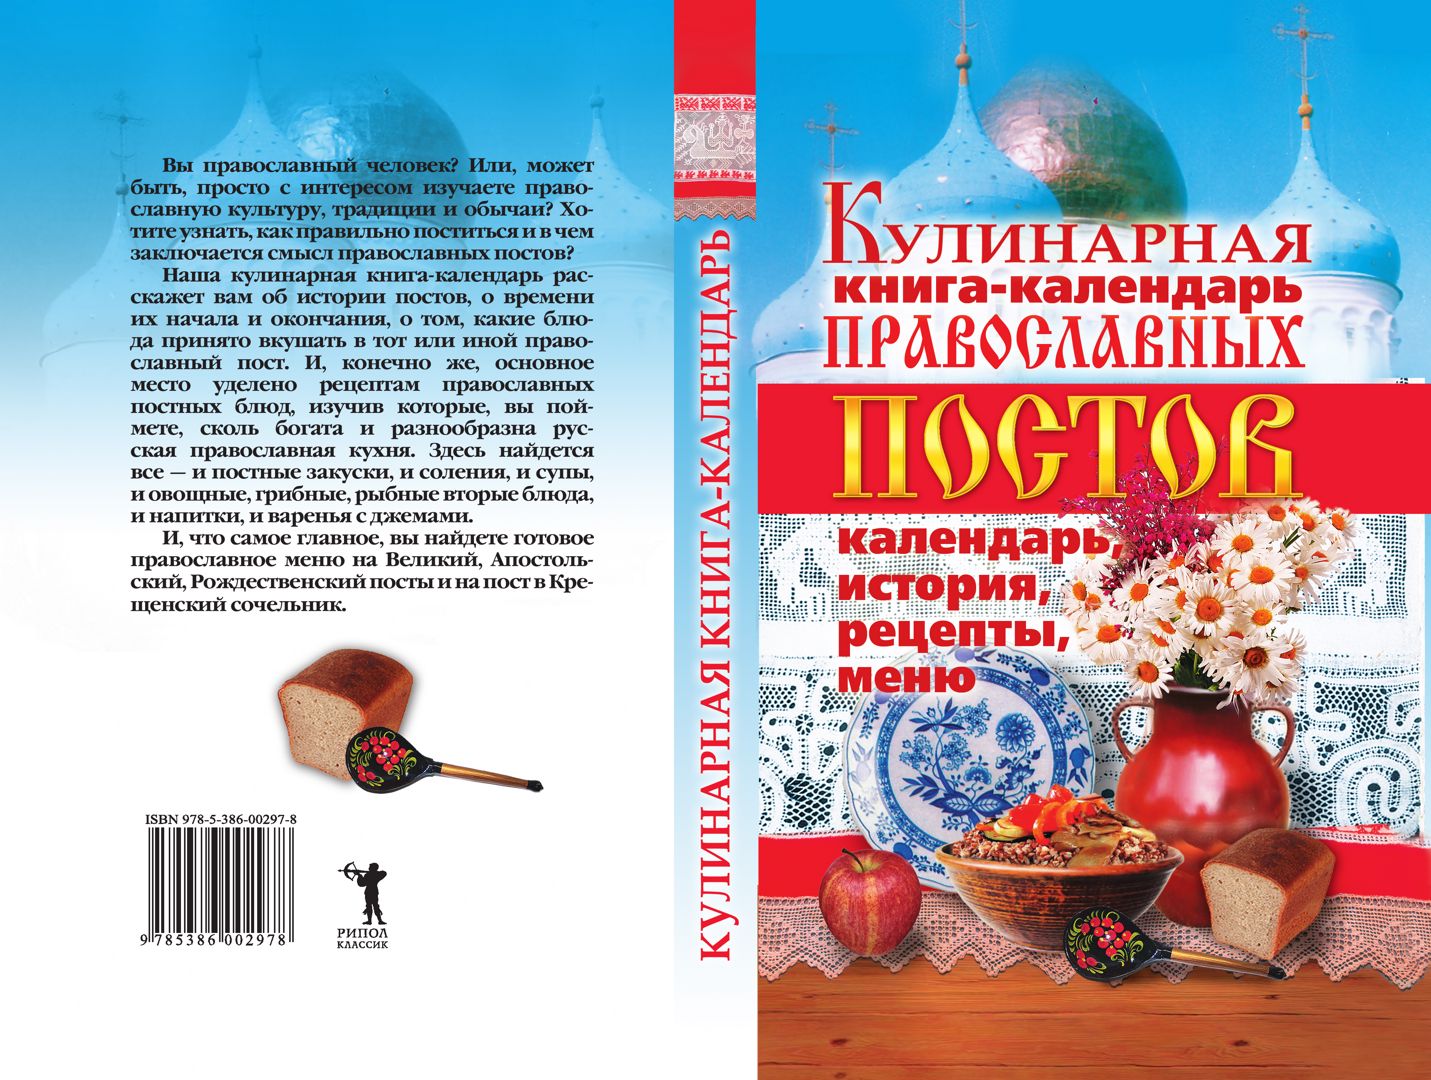 Кулинарная книга-календарь православных постов. Календарь, история, рецепты, меню